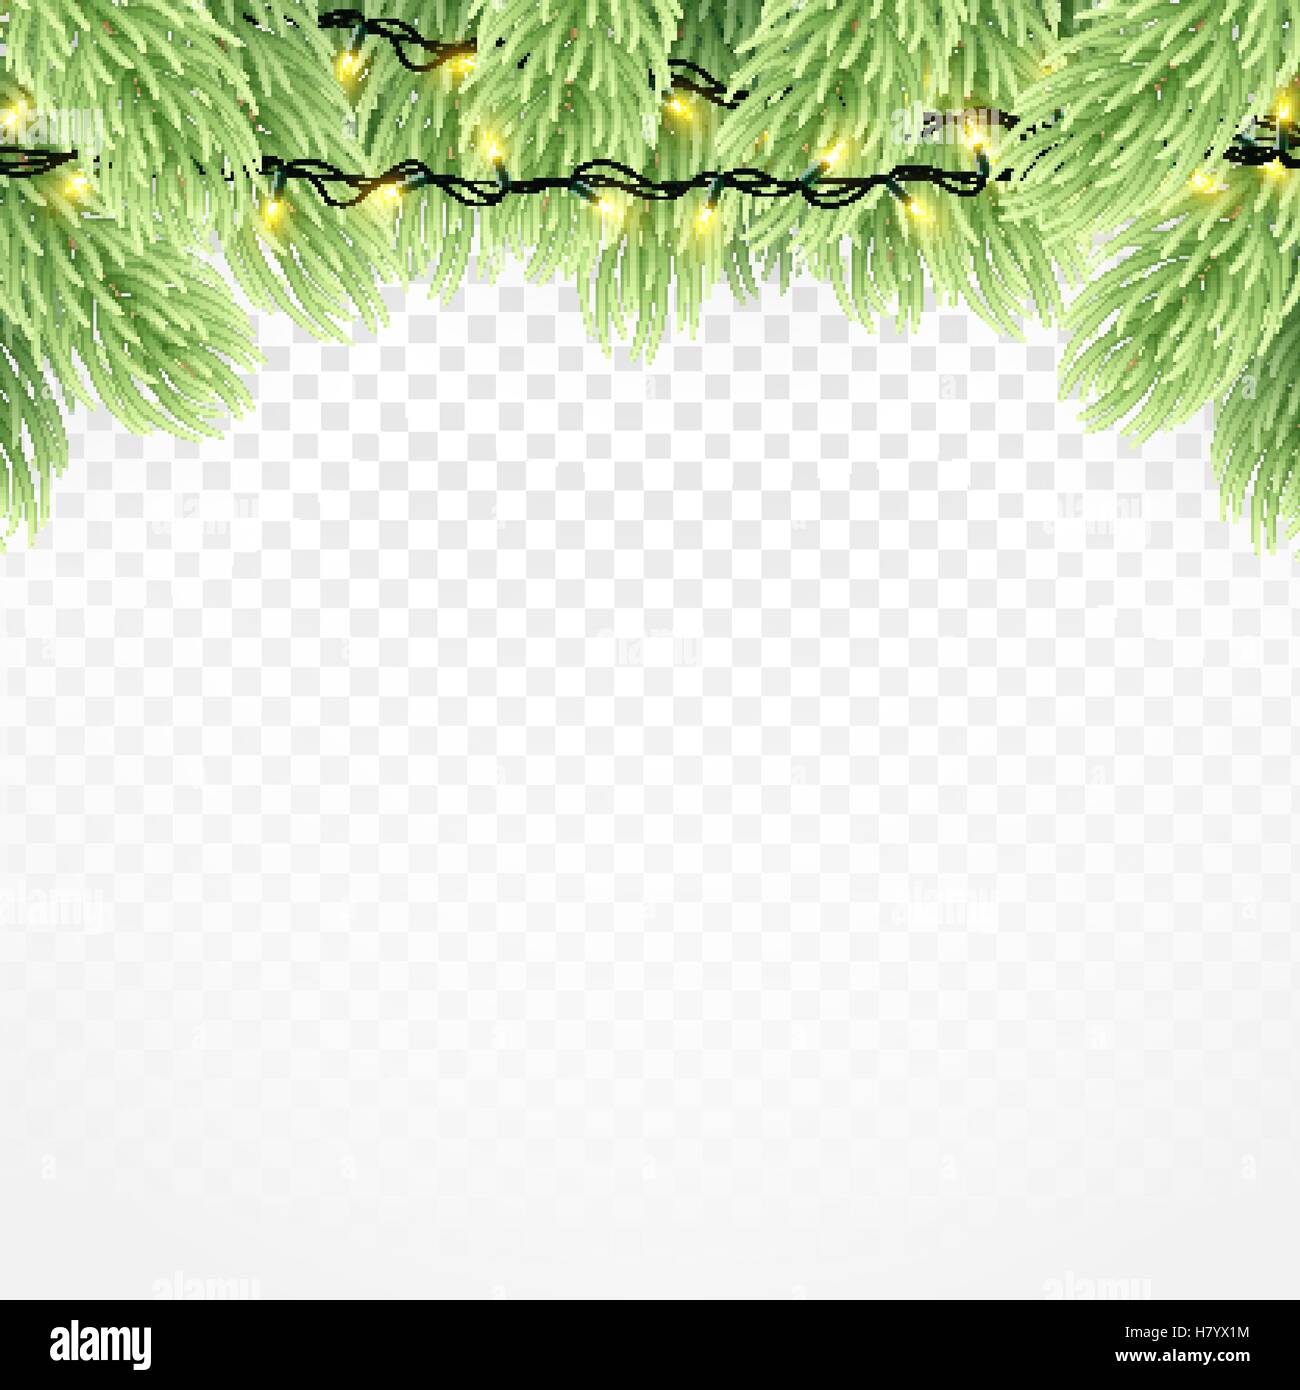 Christmas Ornament Hintergrund Design-Element. Leuchtende Lichter Girlanden Weihnachtsschmuck Baum. Christmas garland realistische Ve Stock Vektor